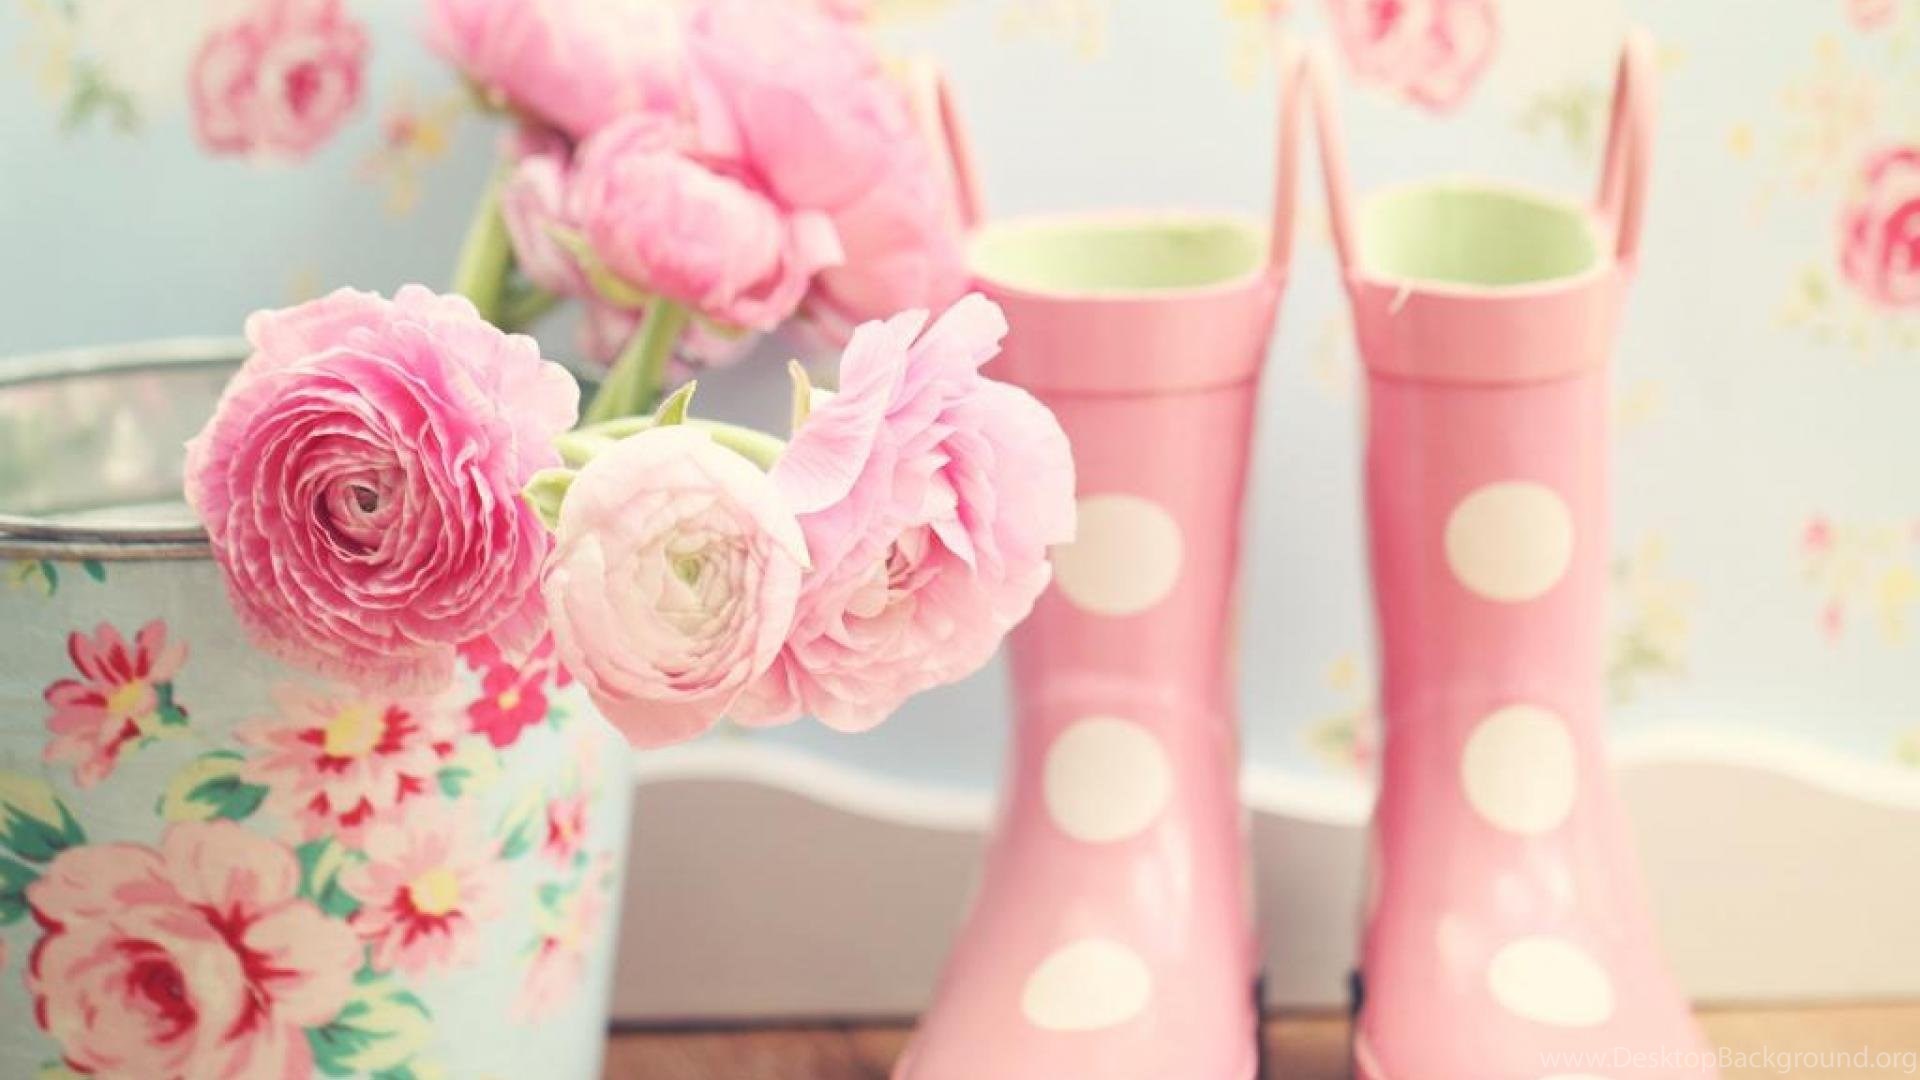 fondos de pantalla femeninos hd,rosado,flor,calzado,planta,florero